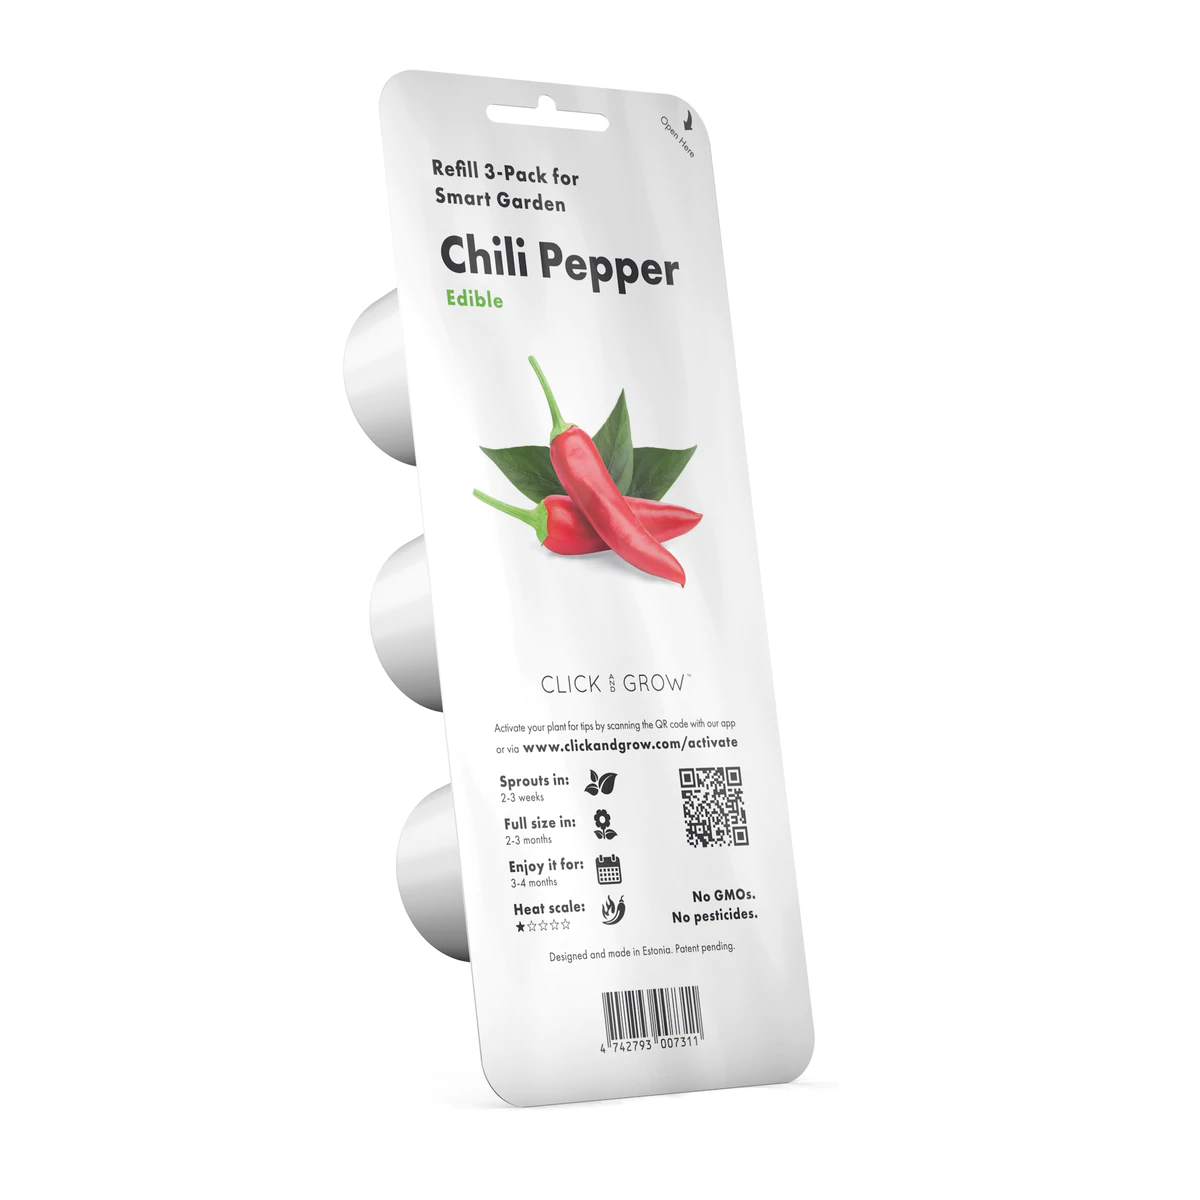 Chili Pepper Plant Pods for Smart Garden